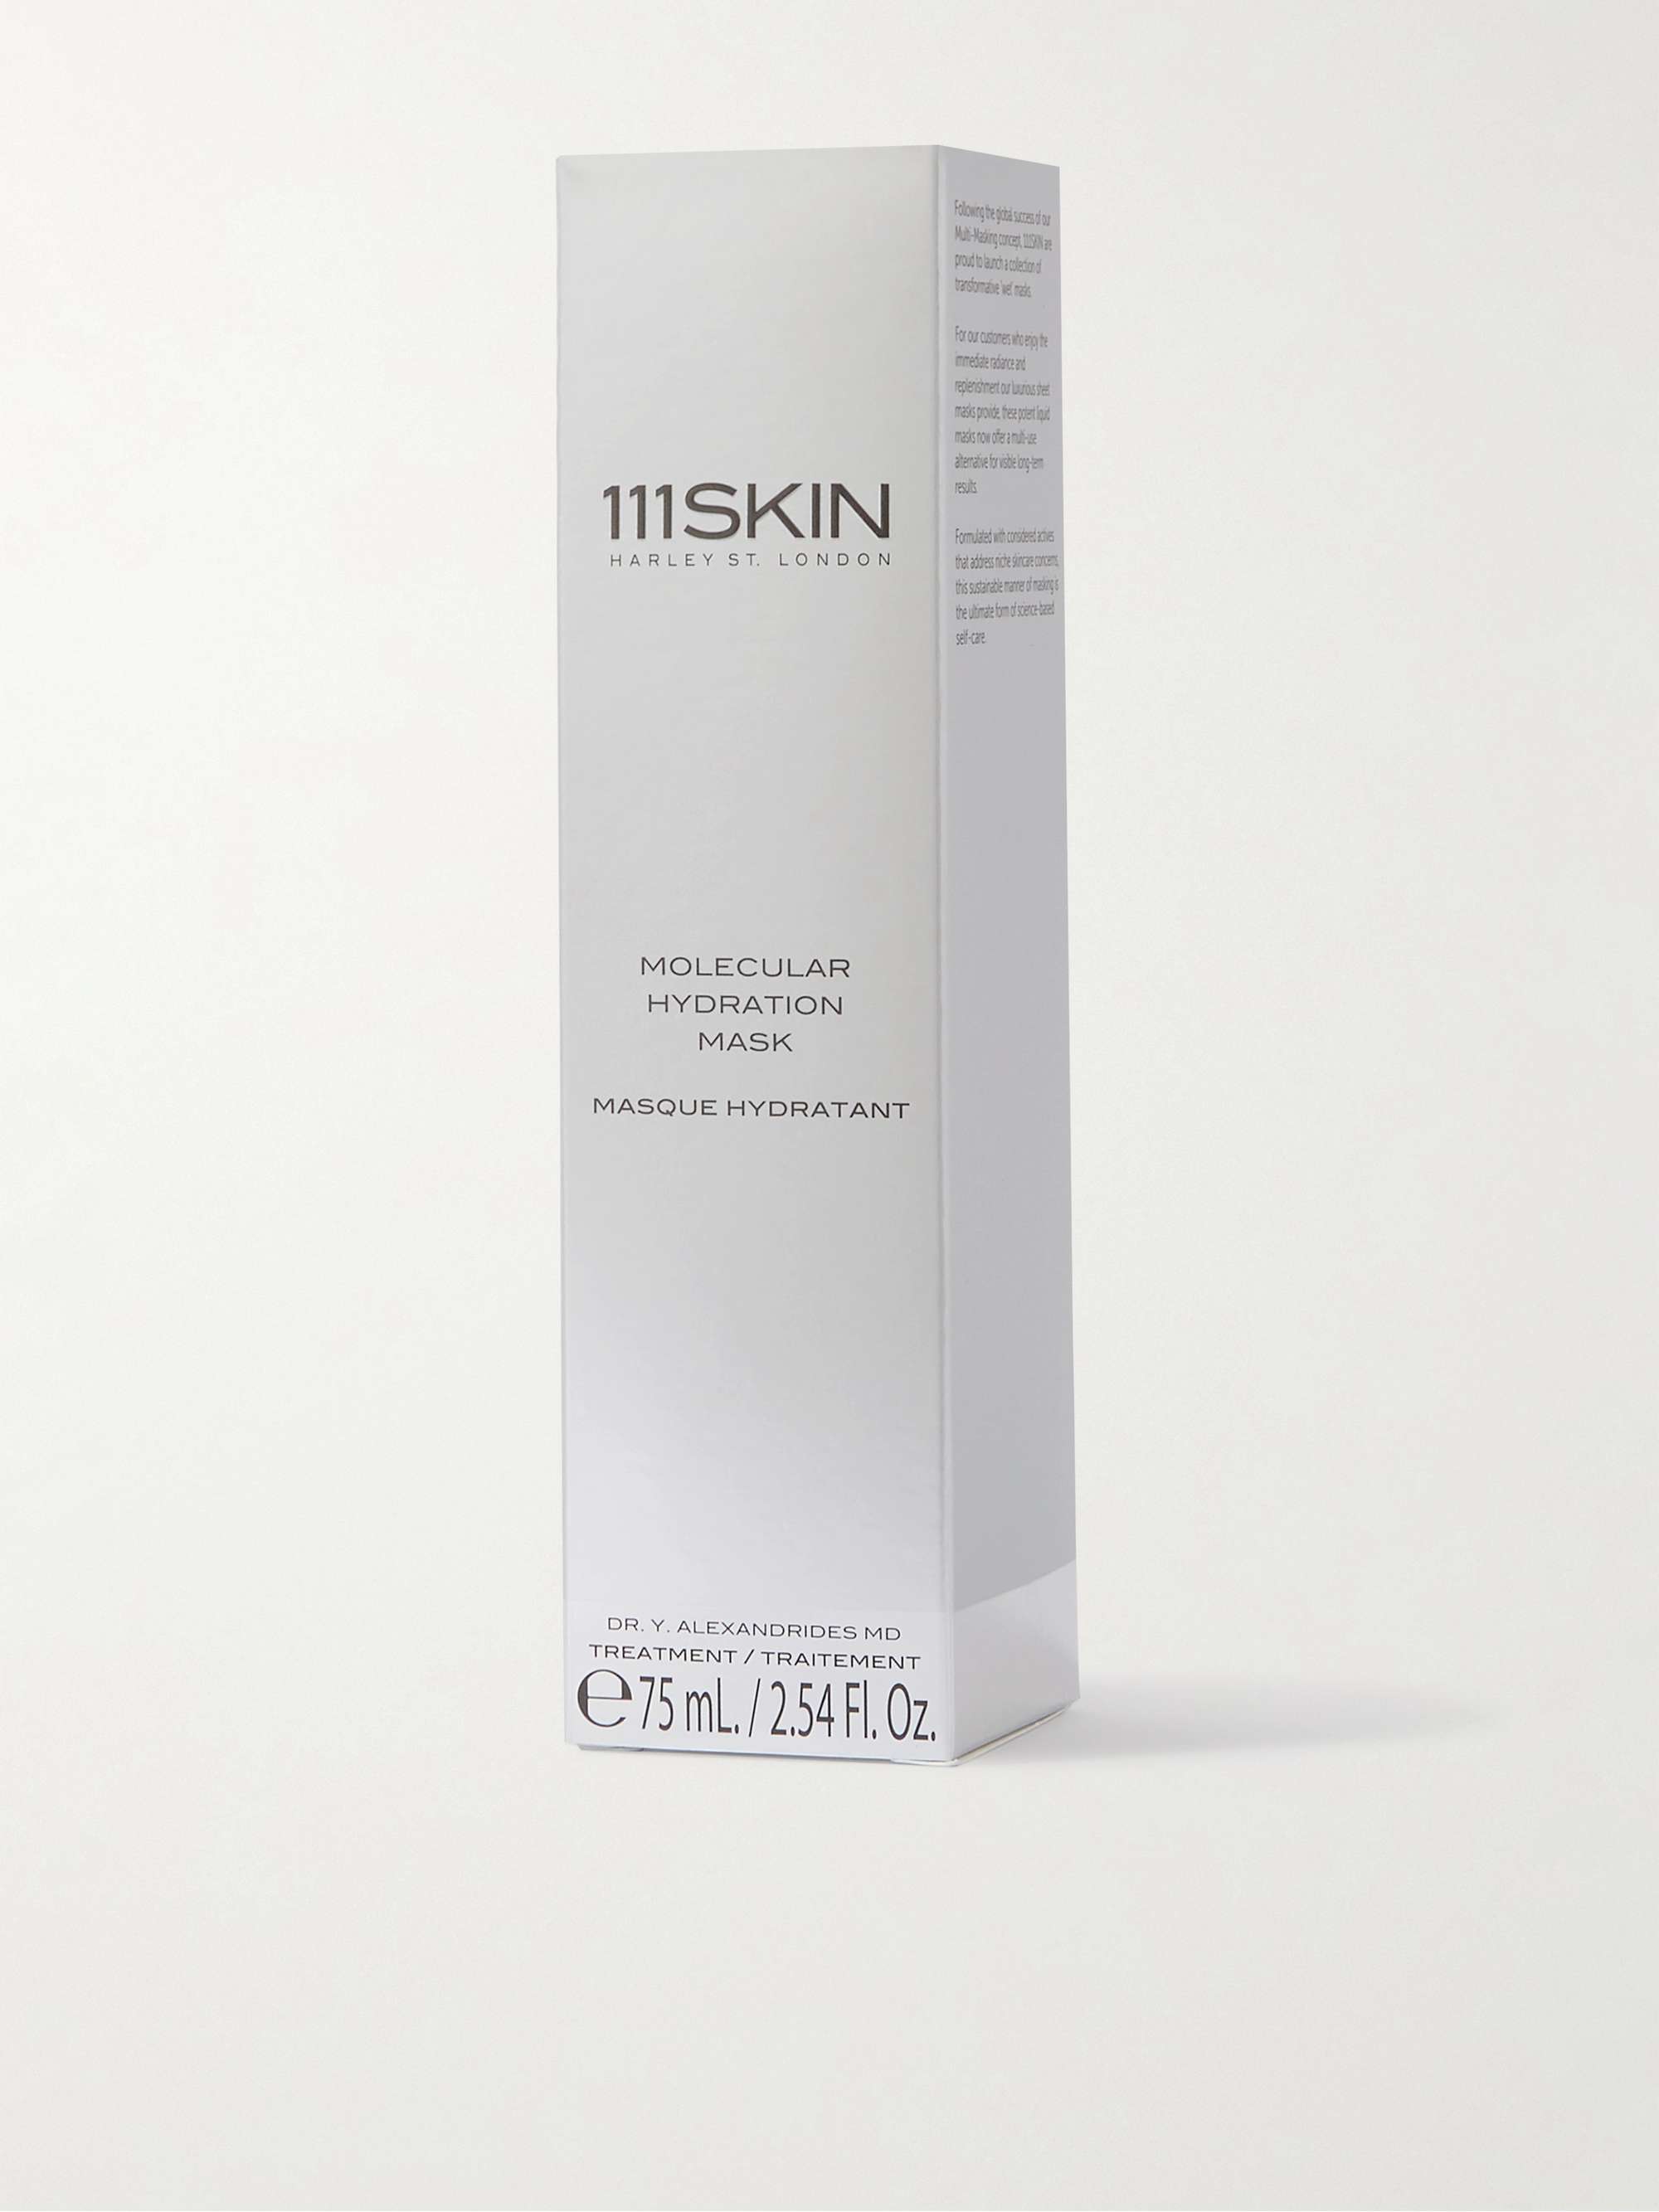 111SKIN Molecular Hydration Mask, 75ml